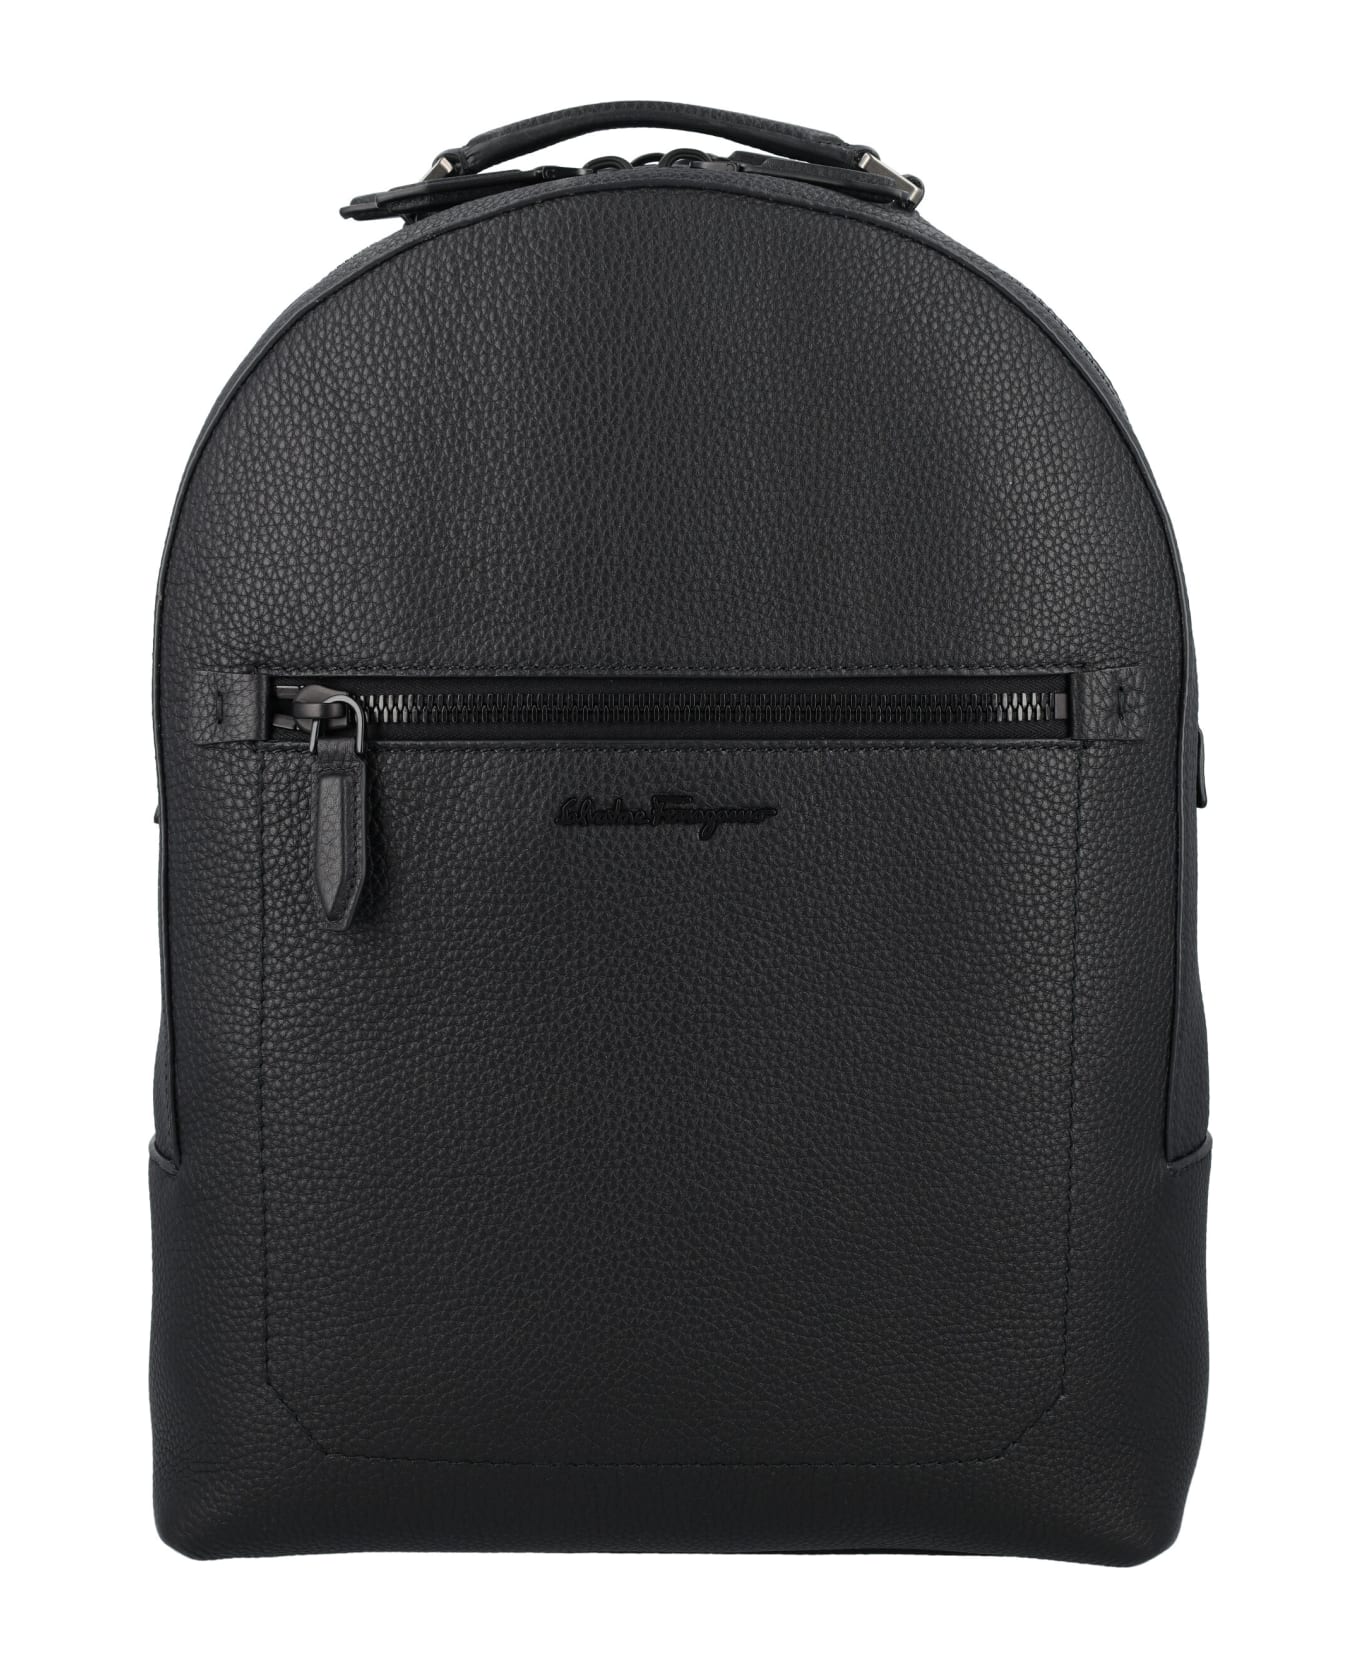 Ferragamo Leather Backpack - NERO || NERO F/25 || NERO バックパック